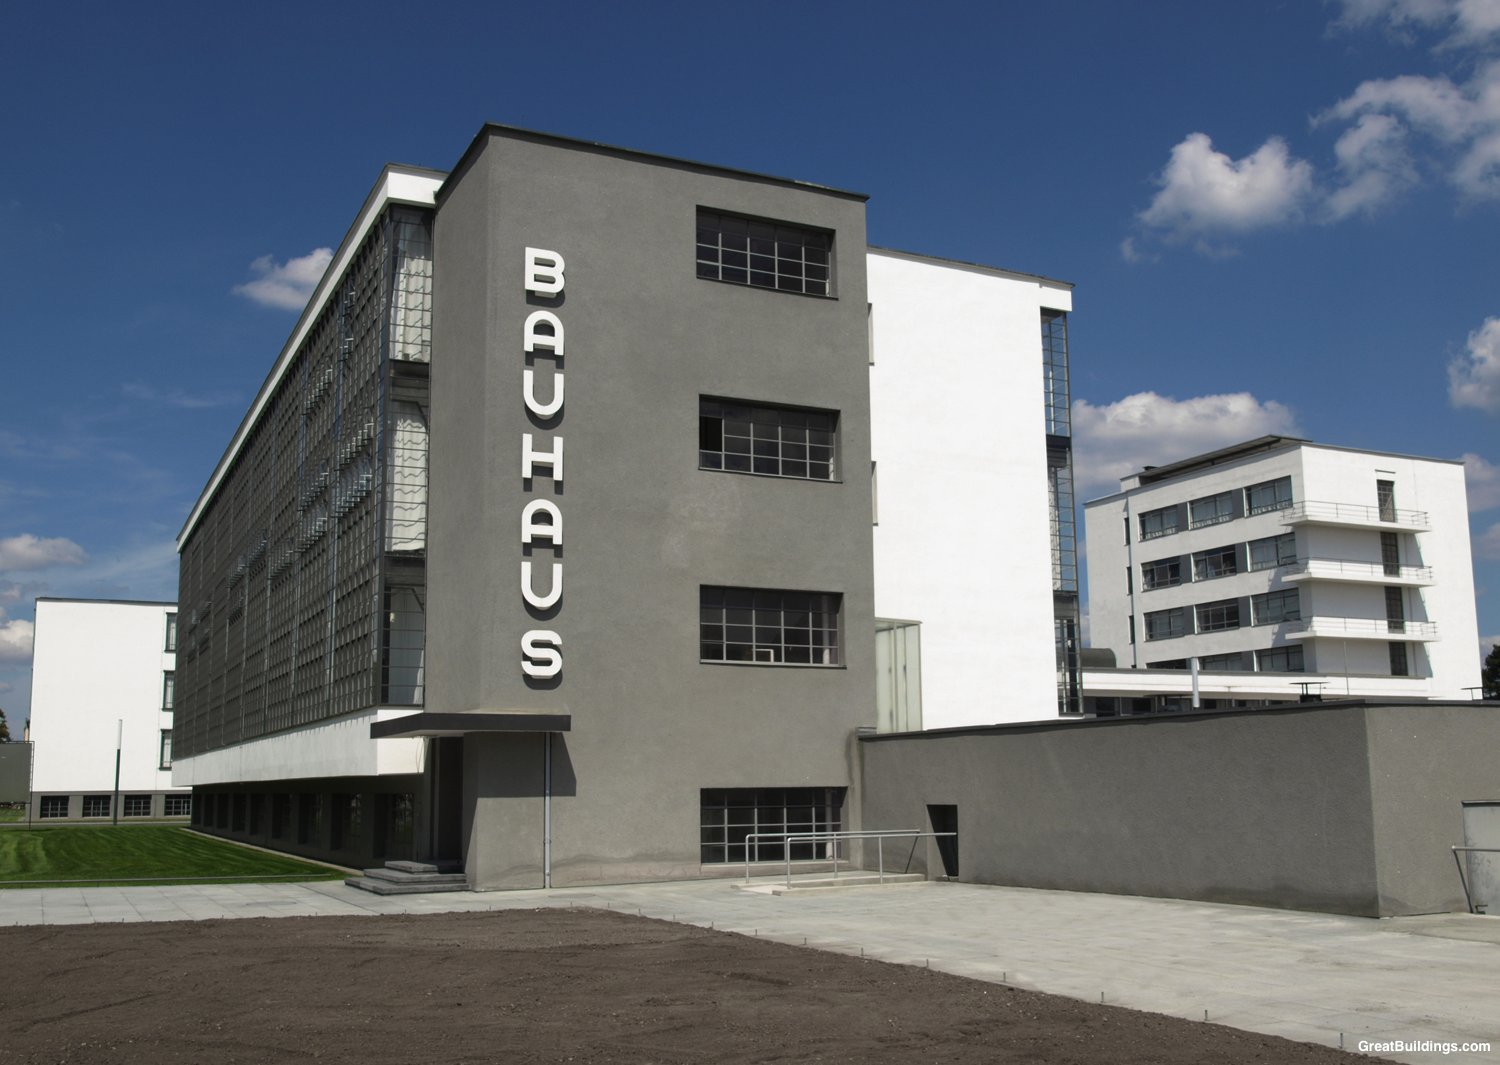 Bauhaus #9